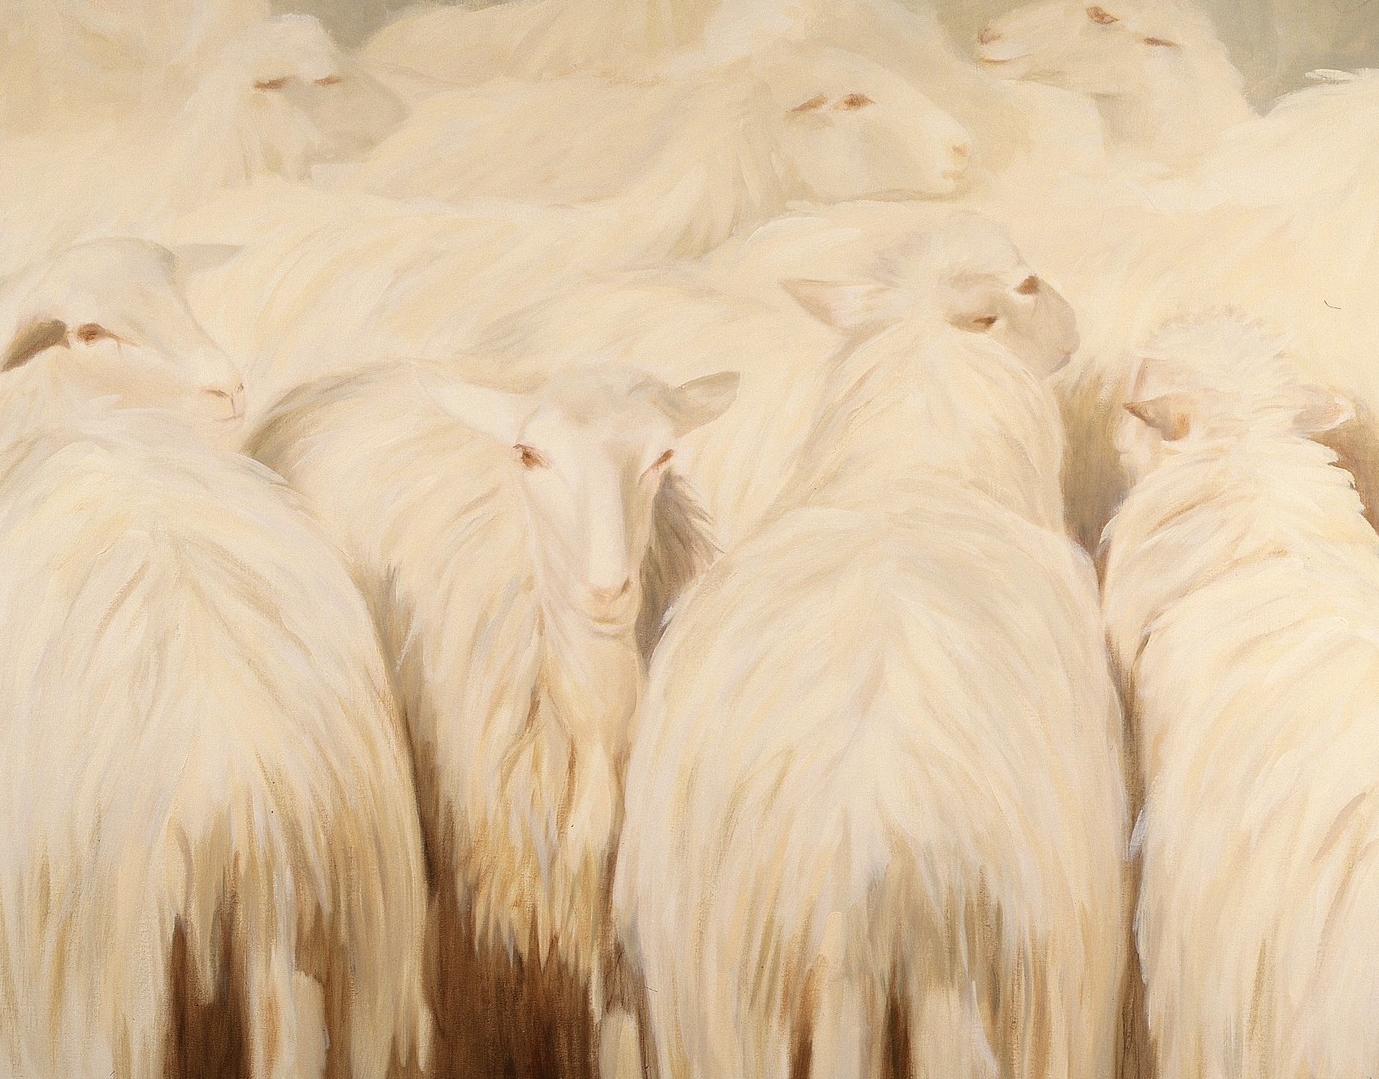   Toscaanse schapen,  olieverf op linnen, 100 x 120 cm. Prijs op aanvraag. 